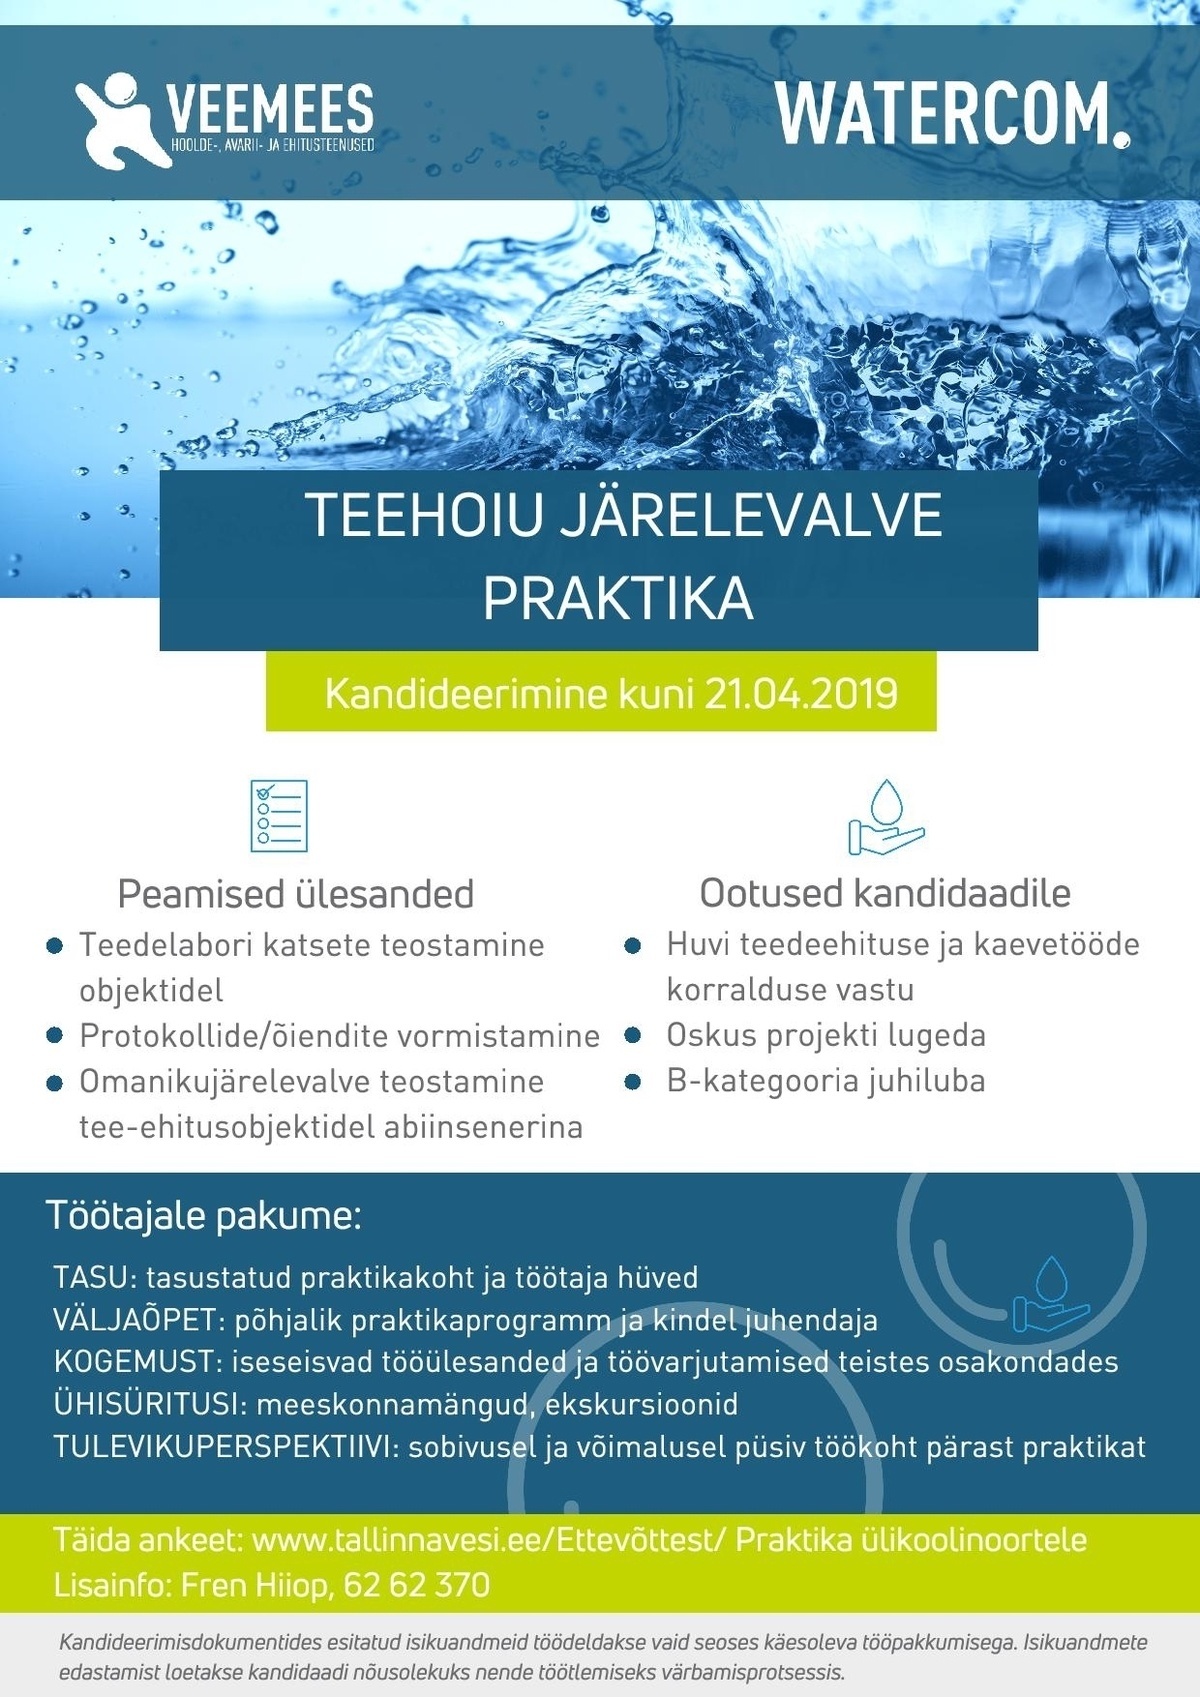 AS Tallinna Vesi/Watercom Teehoiu omanikujärelevalve praktika